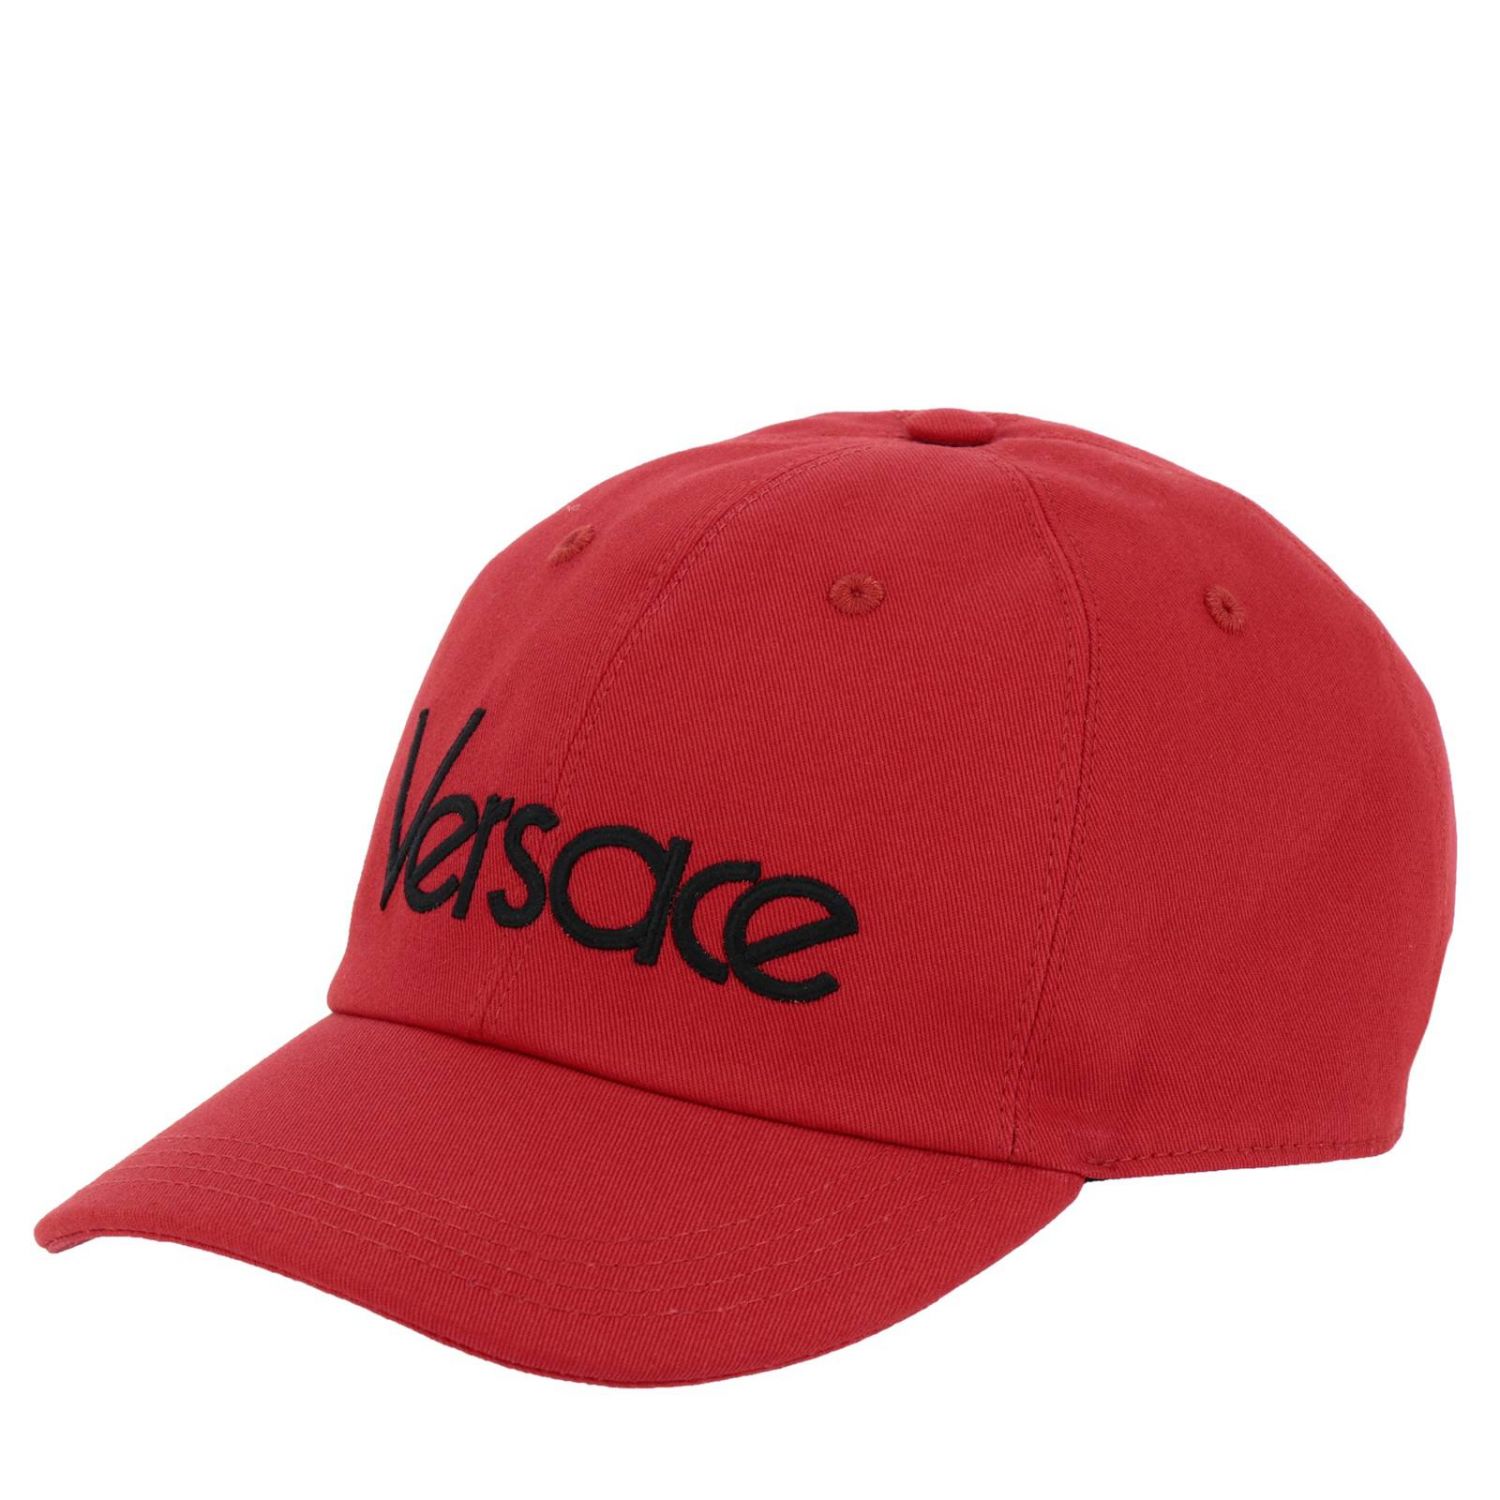 Versace Outlet: Hat men | Hat Versace Men Red | Hat Versace ICAP004 ...